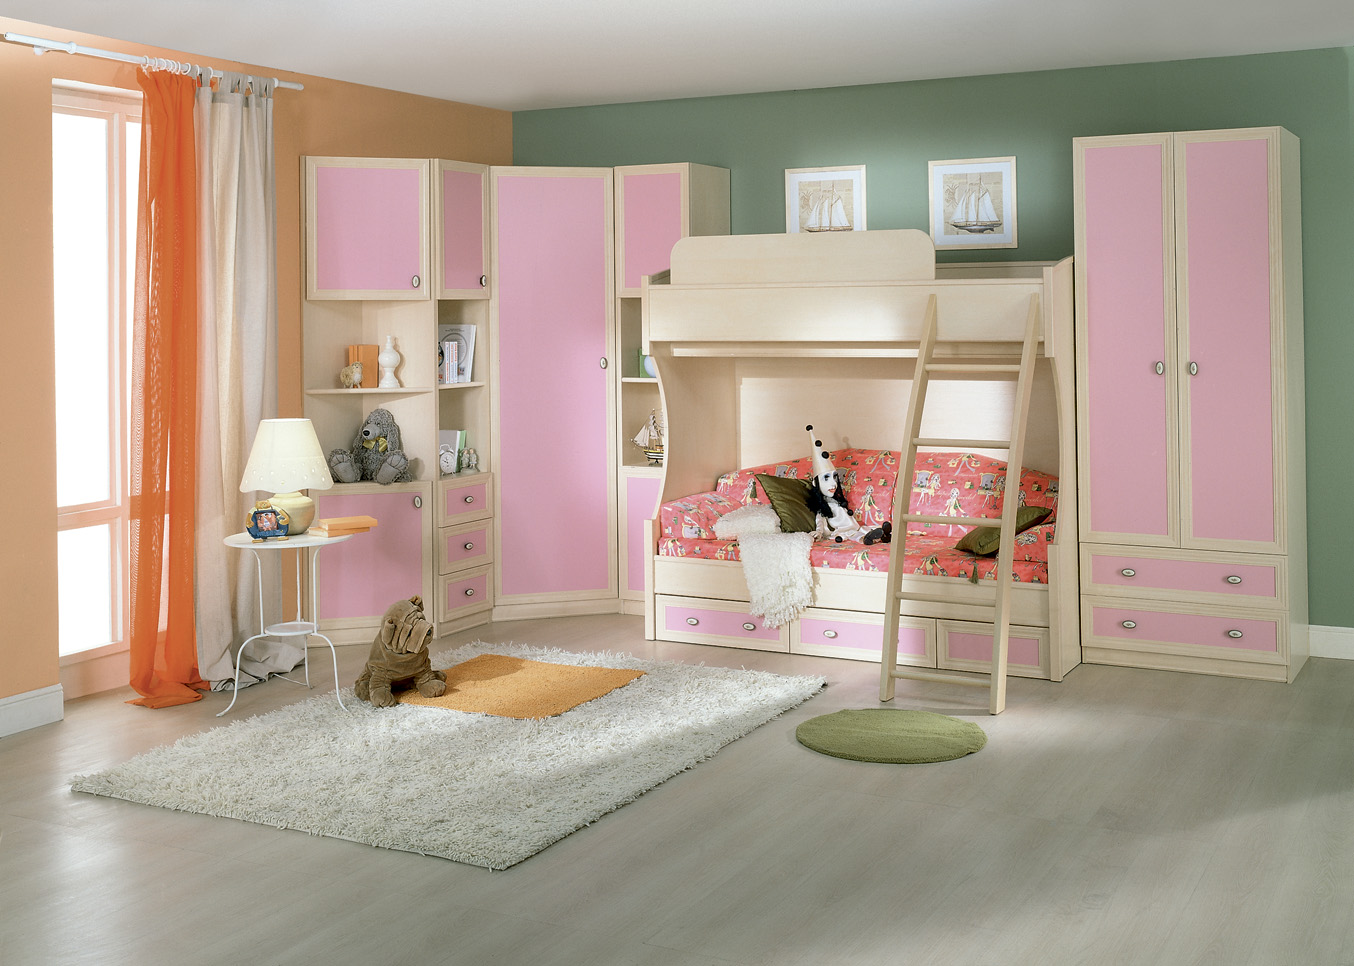 Мебель в детскую комнату девочке 10 лет